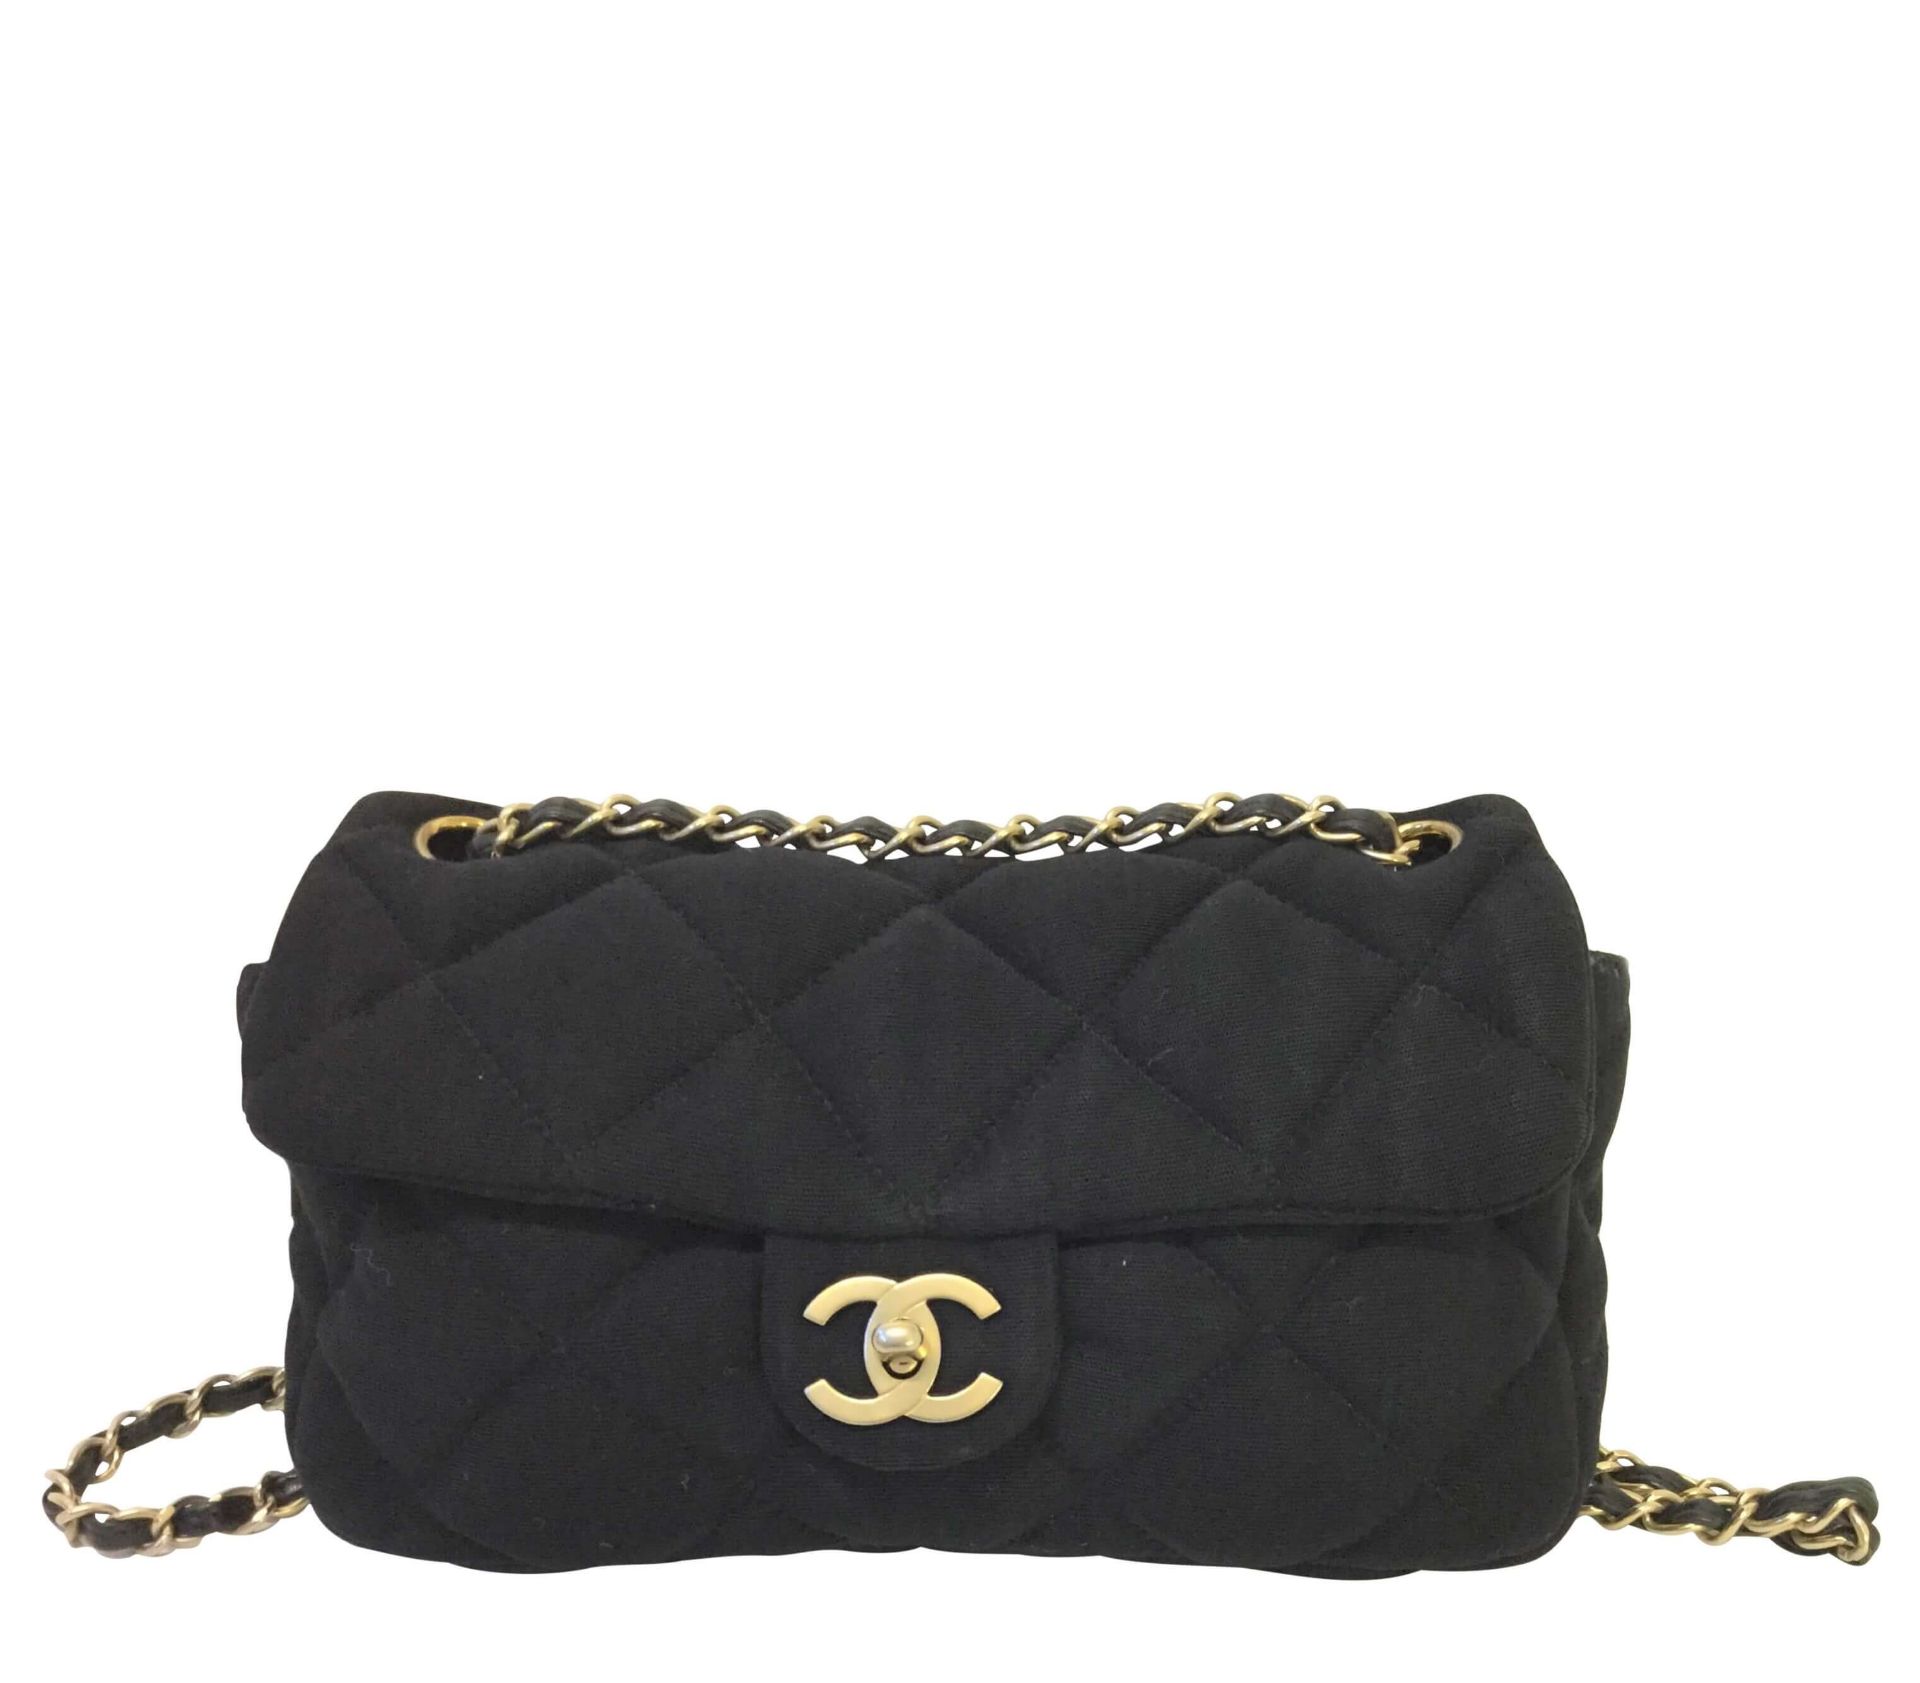 Chanel 2.55 Jersey Black Vintage Shoulder Bag